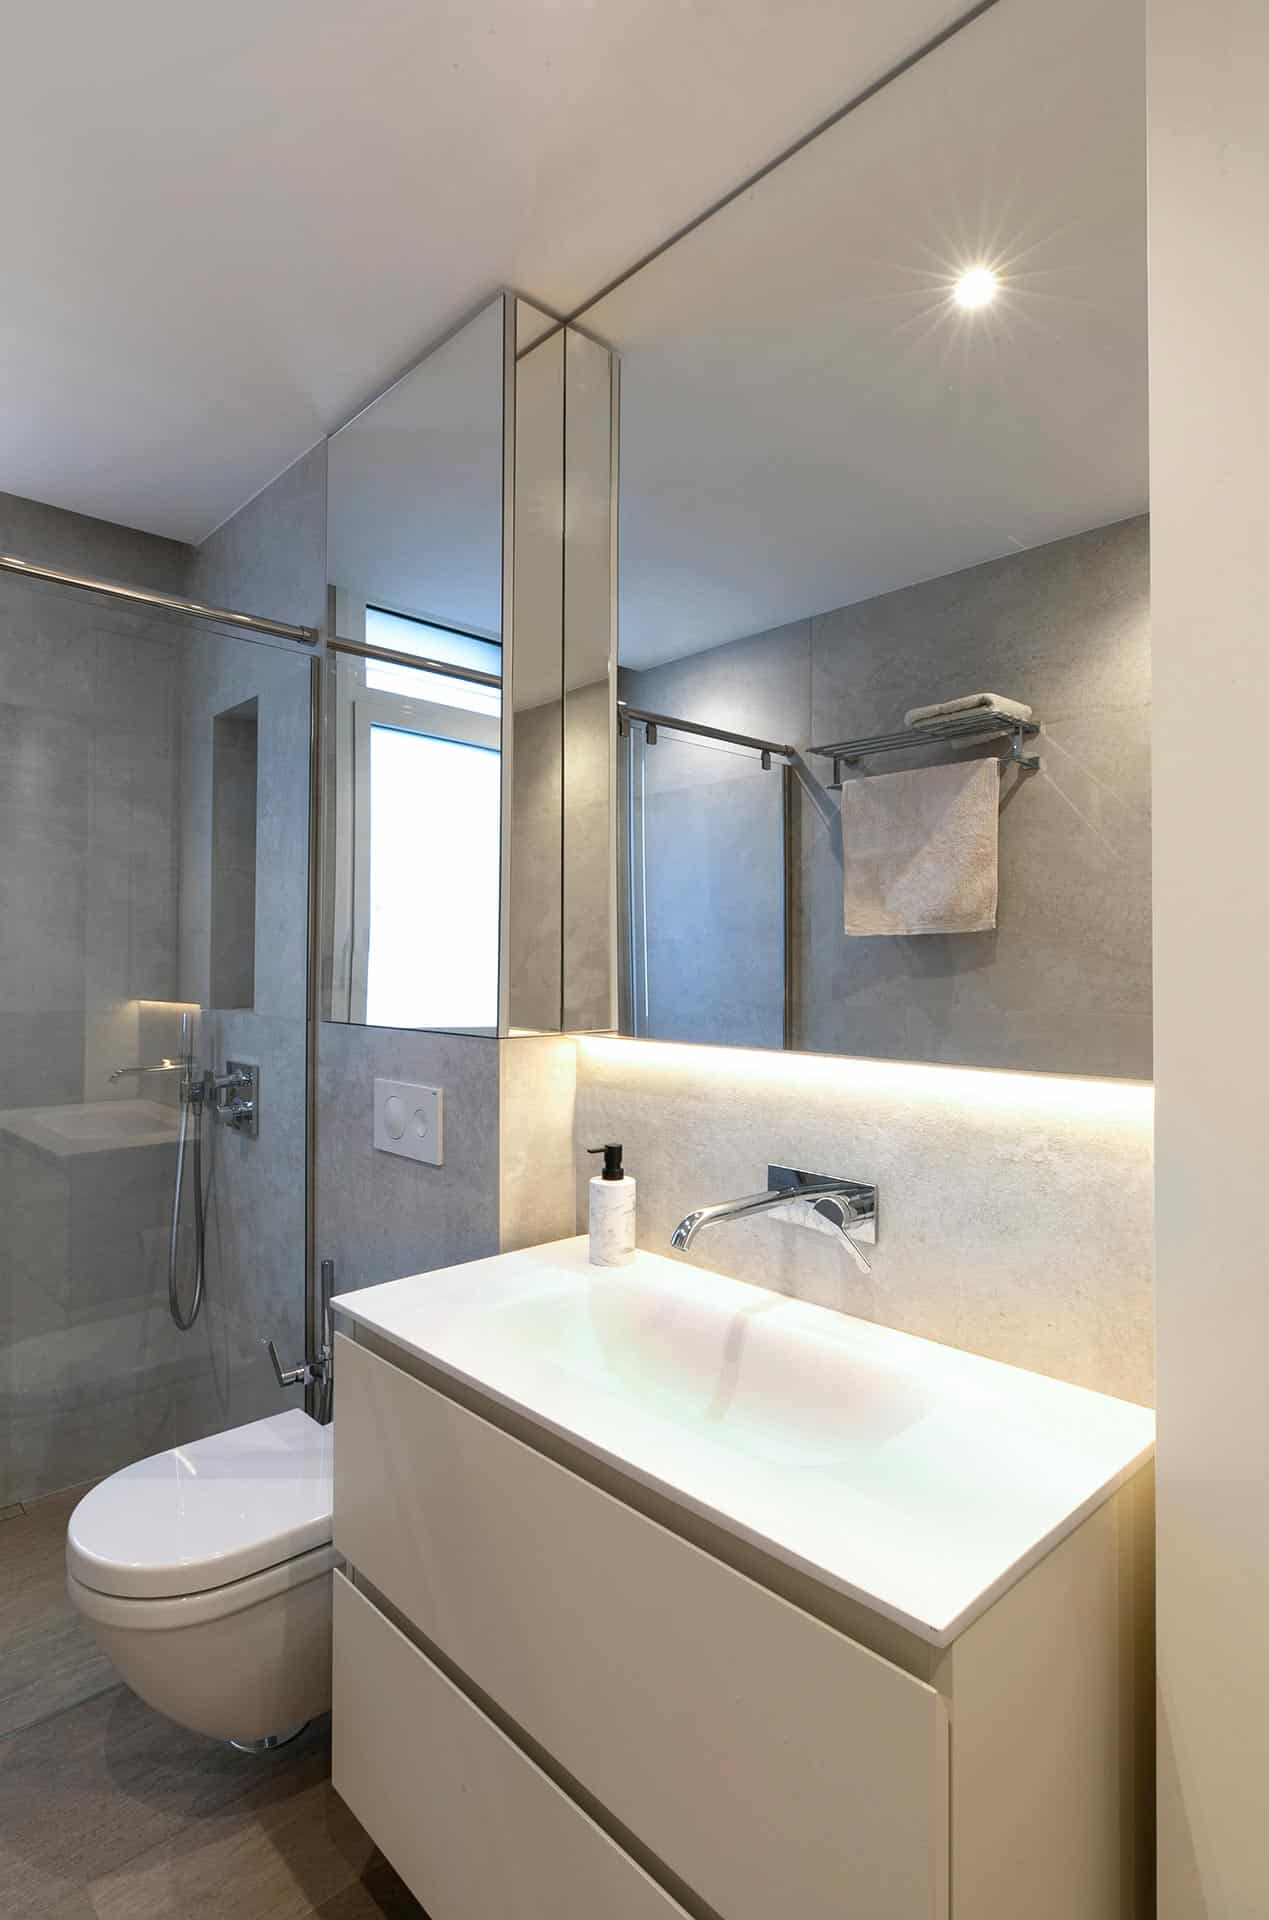 Baño con armario espejo diseñado por Moah Arquitectos en Cantabria